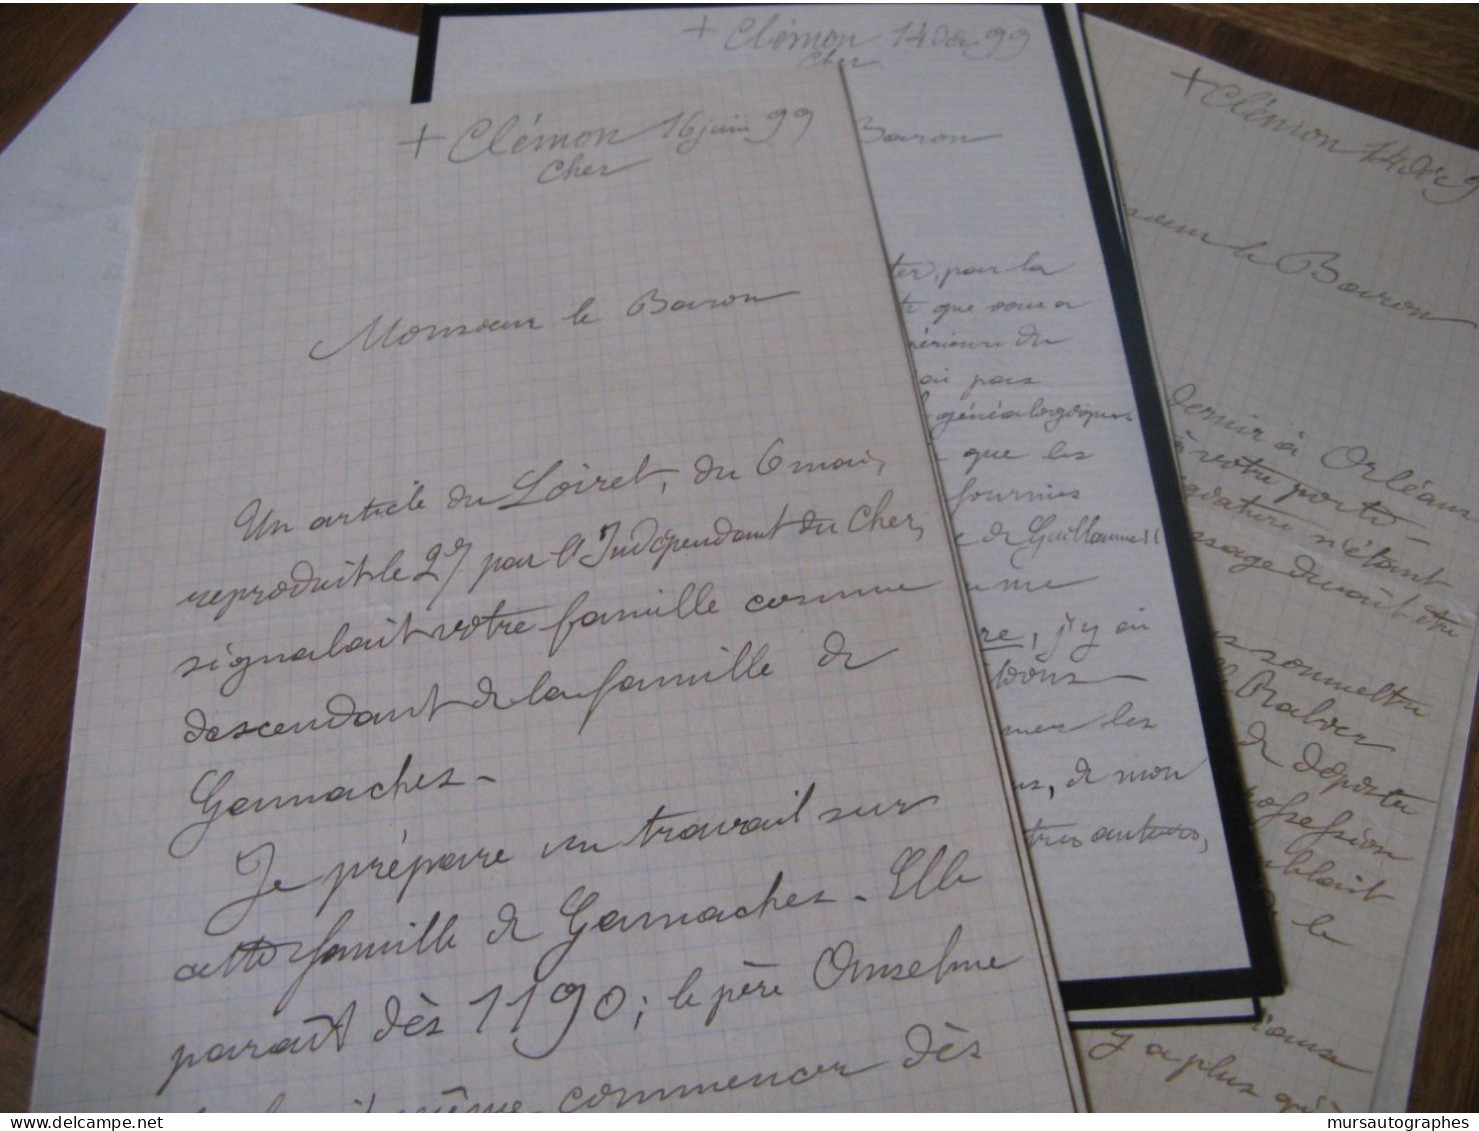 7 LETTRES AUTOGRAPHES SIGNEES DE L'ABBE DUPLAIX 1899-1906 GENEALOGIE FAMILLE GAMACHES CHER CLERMONT - Historical Figures